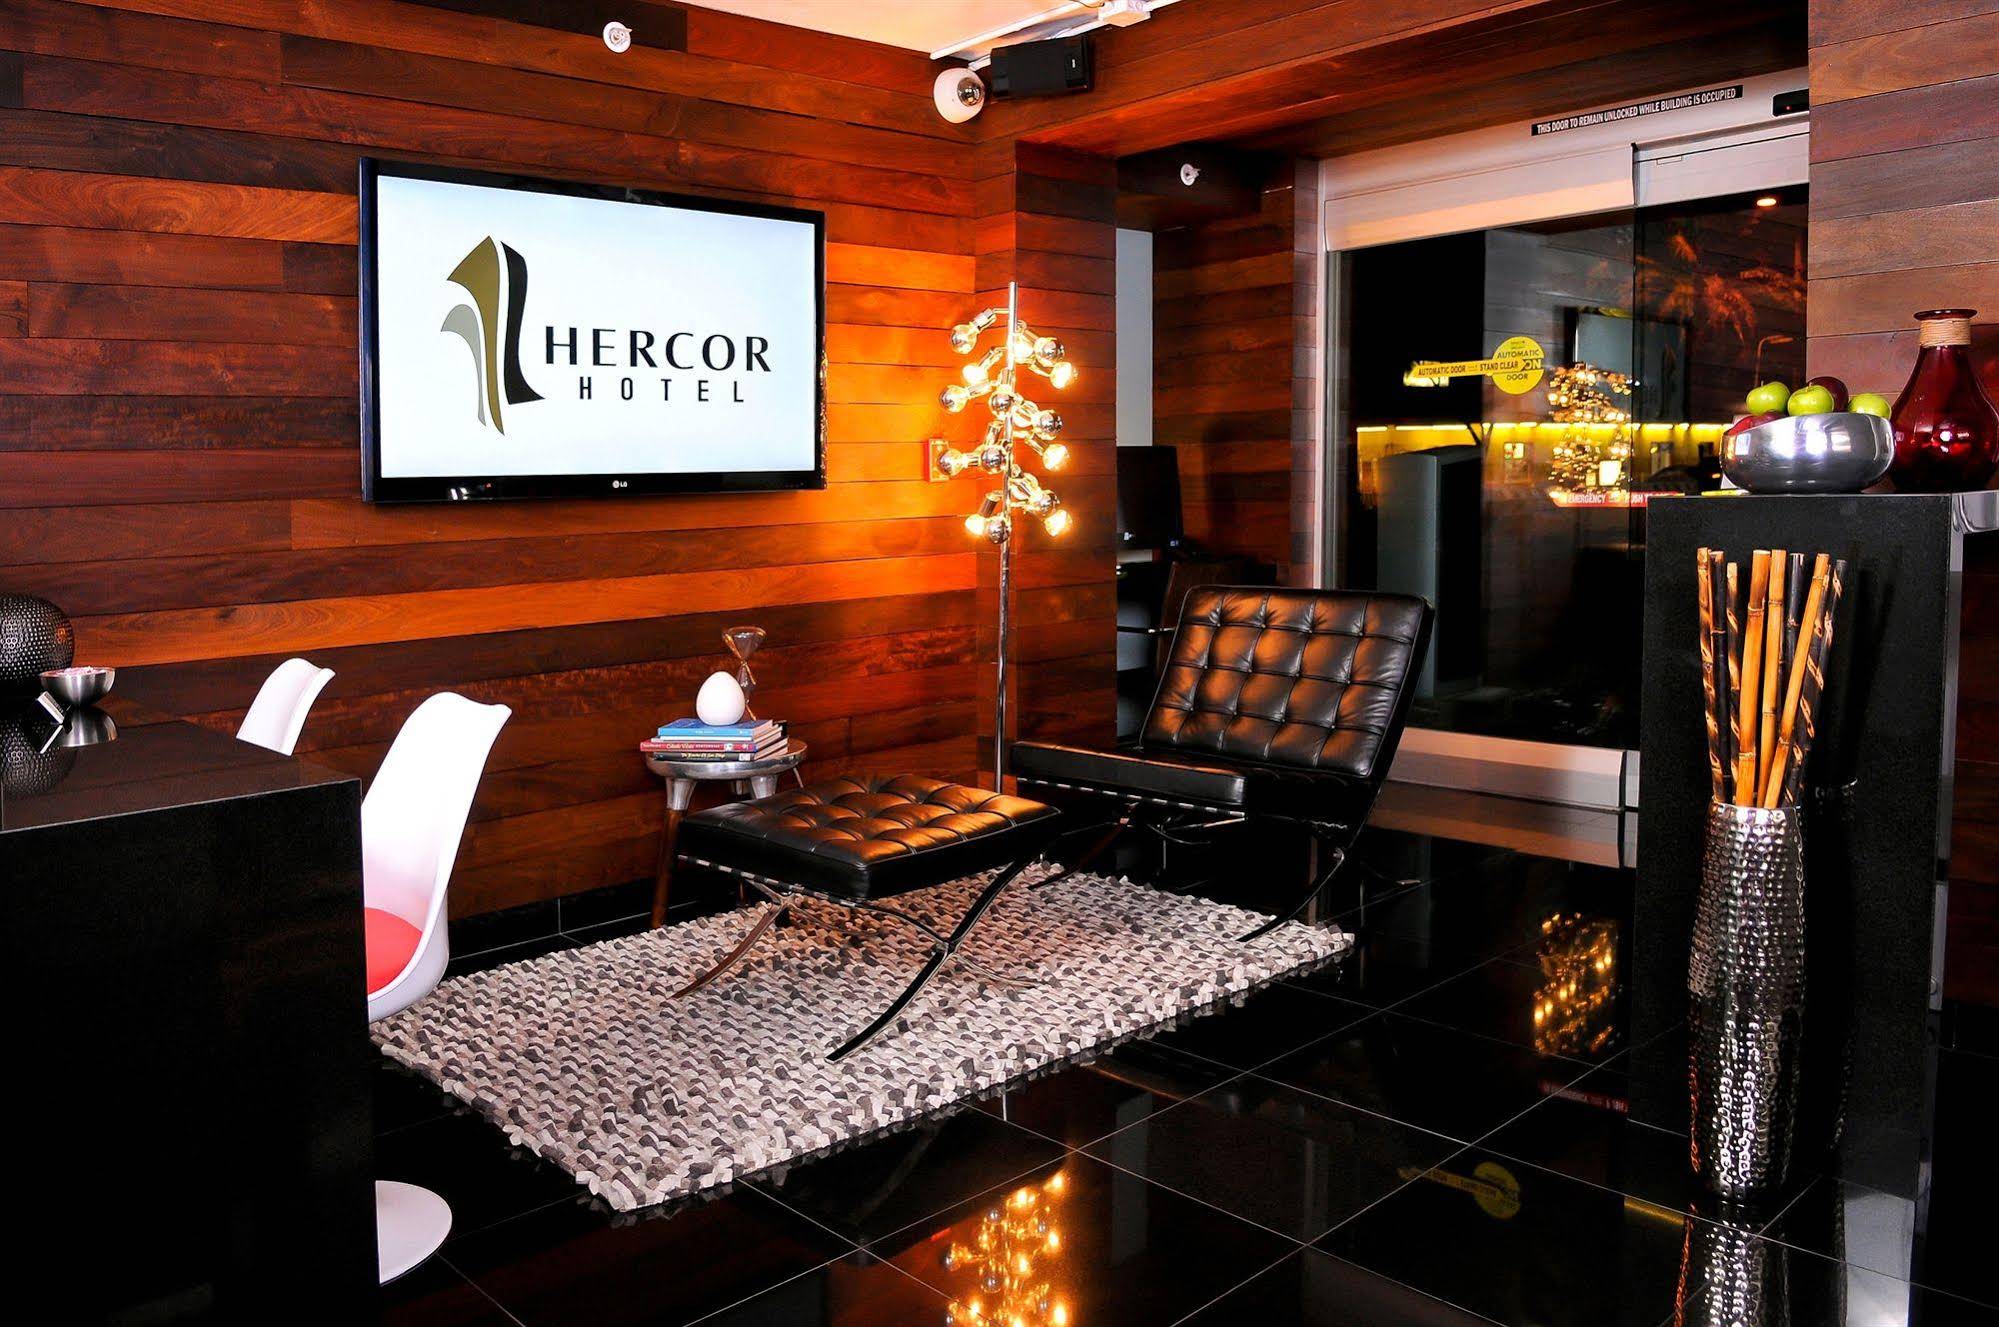 Hercor Hotel